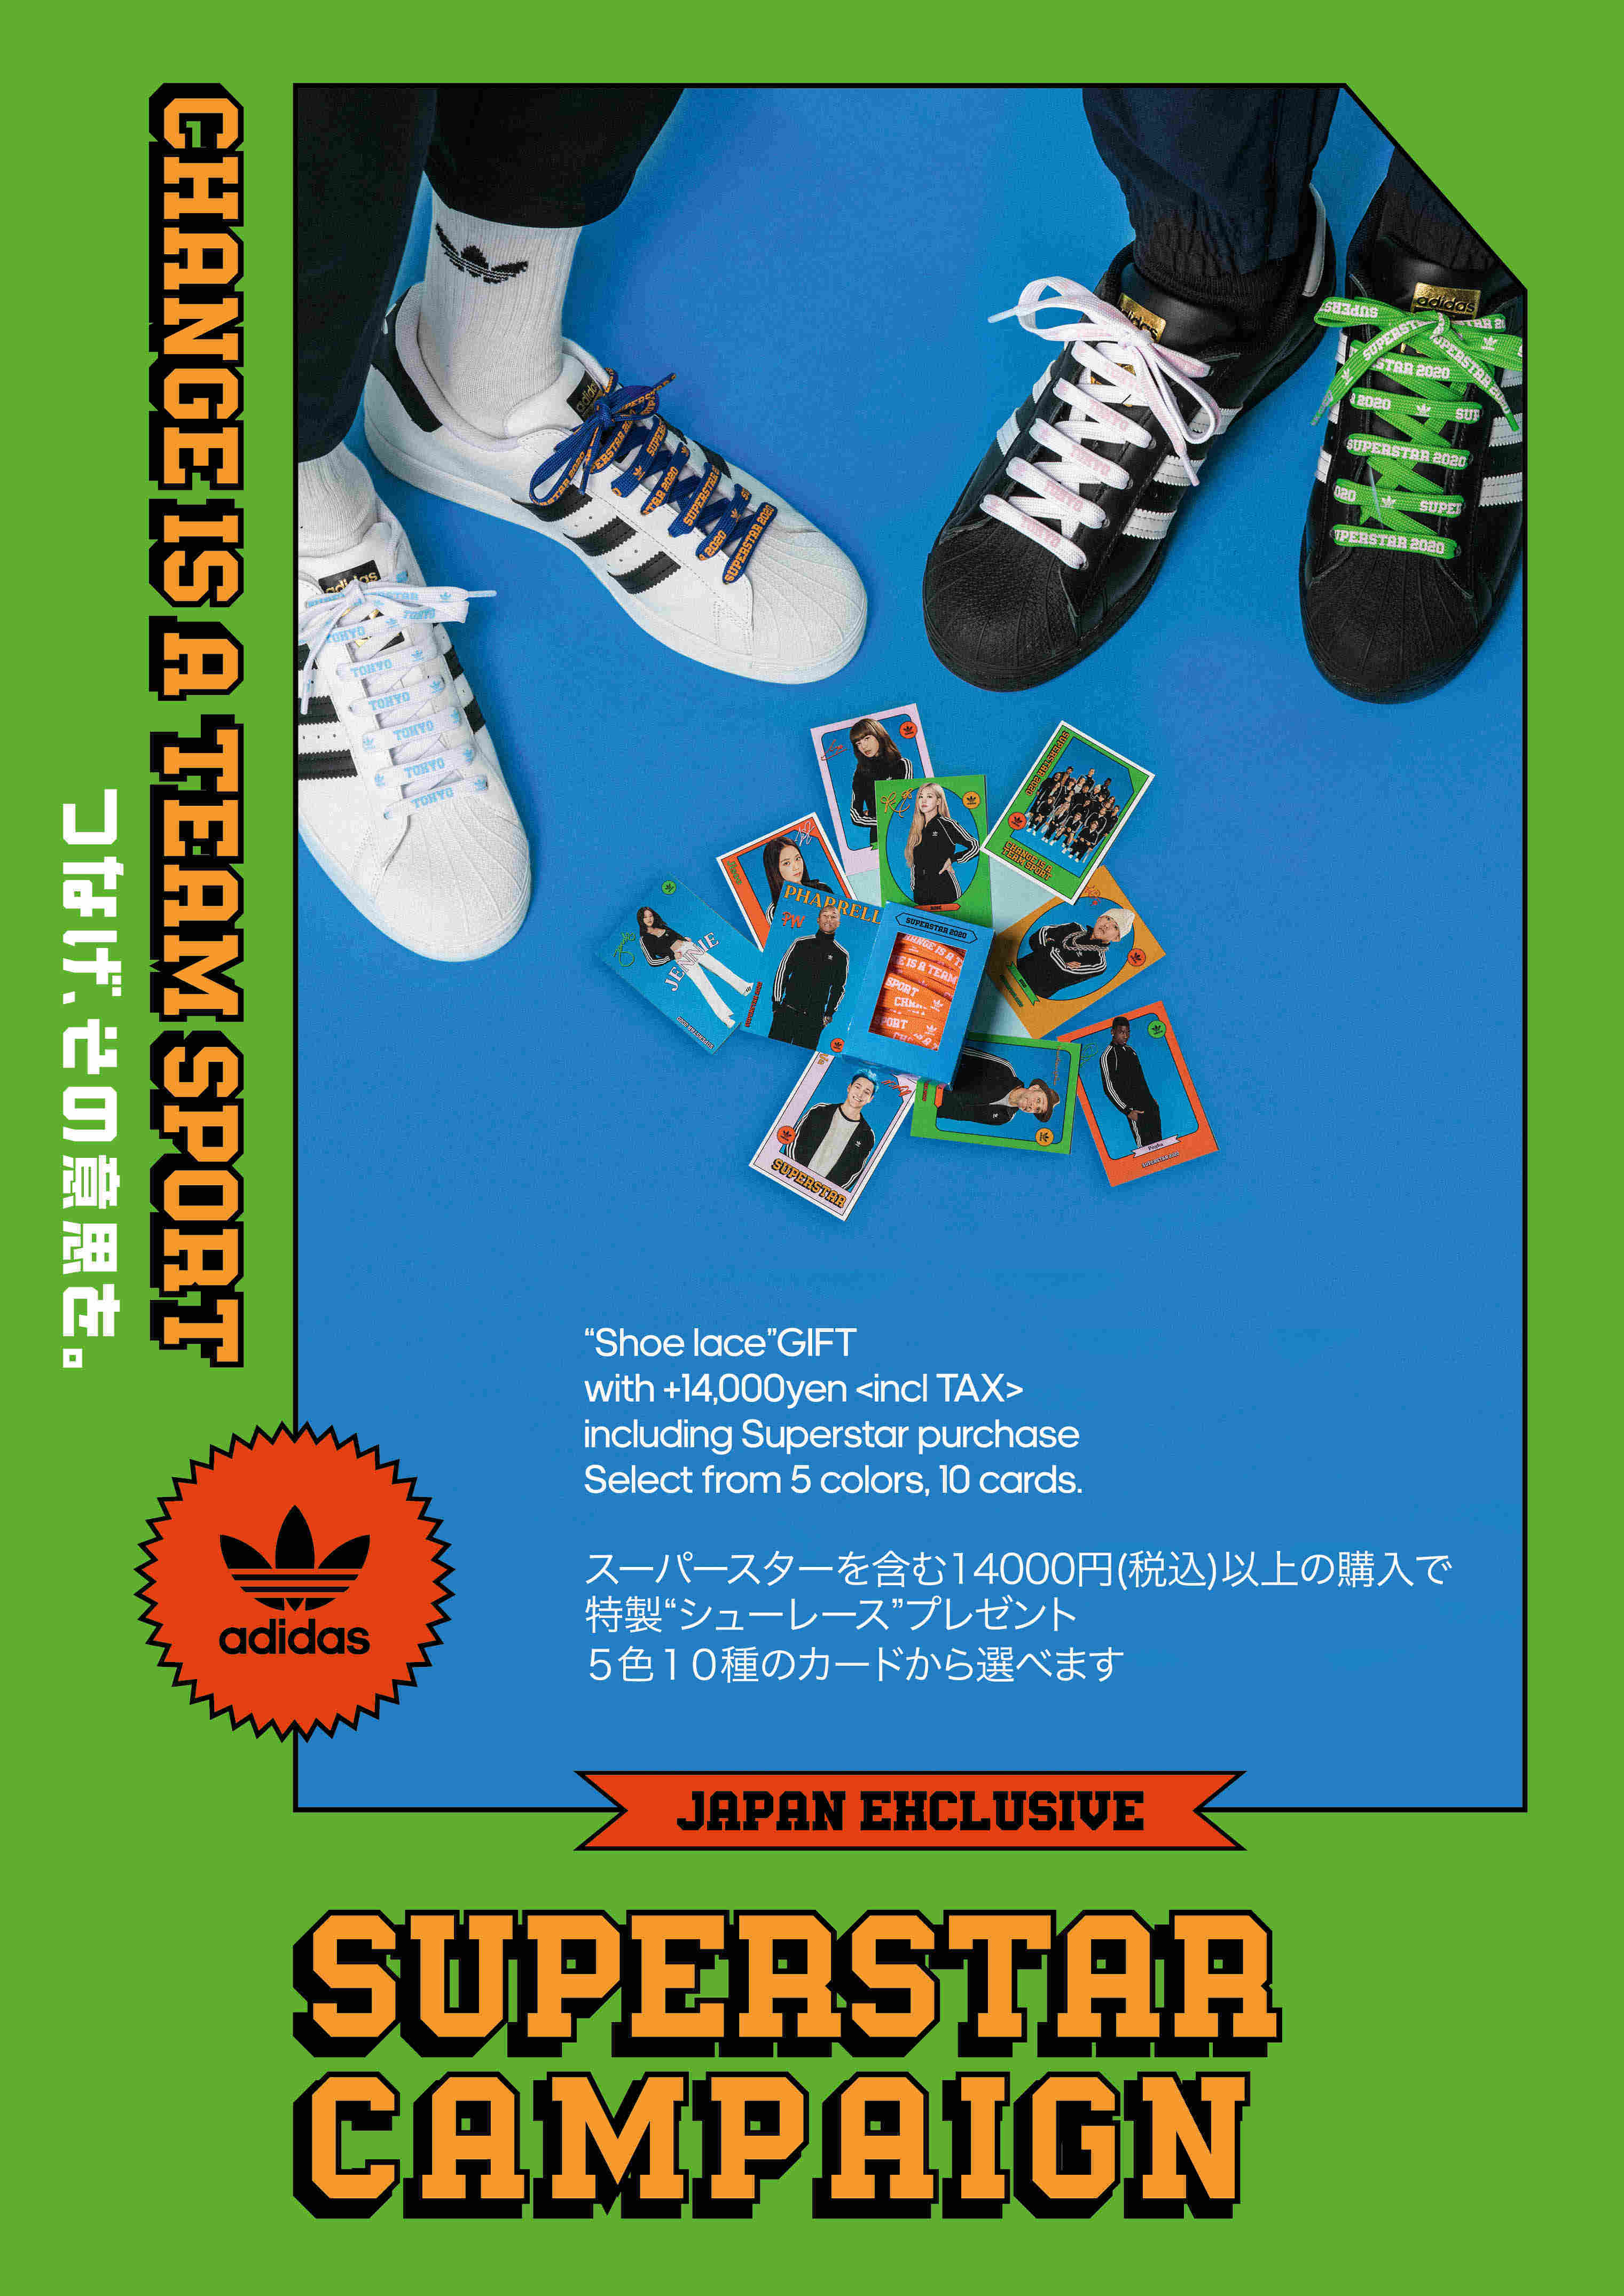 Superstar Campaign 公式 アディダスオンラインショップ Adidas